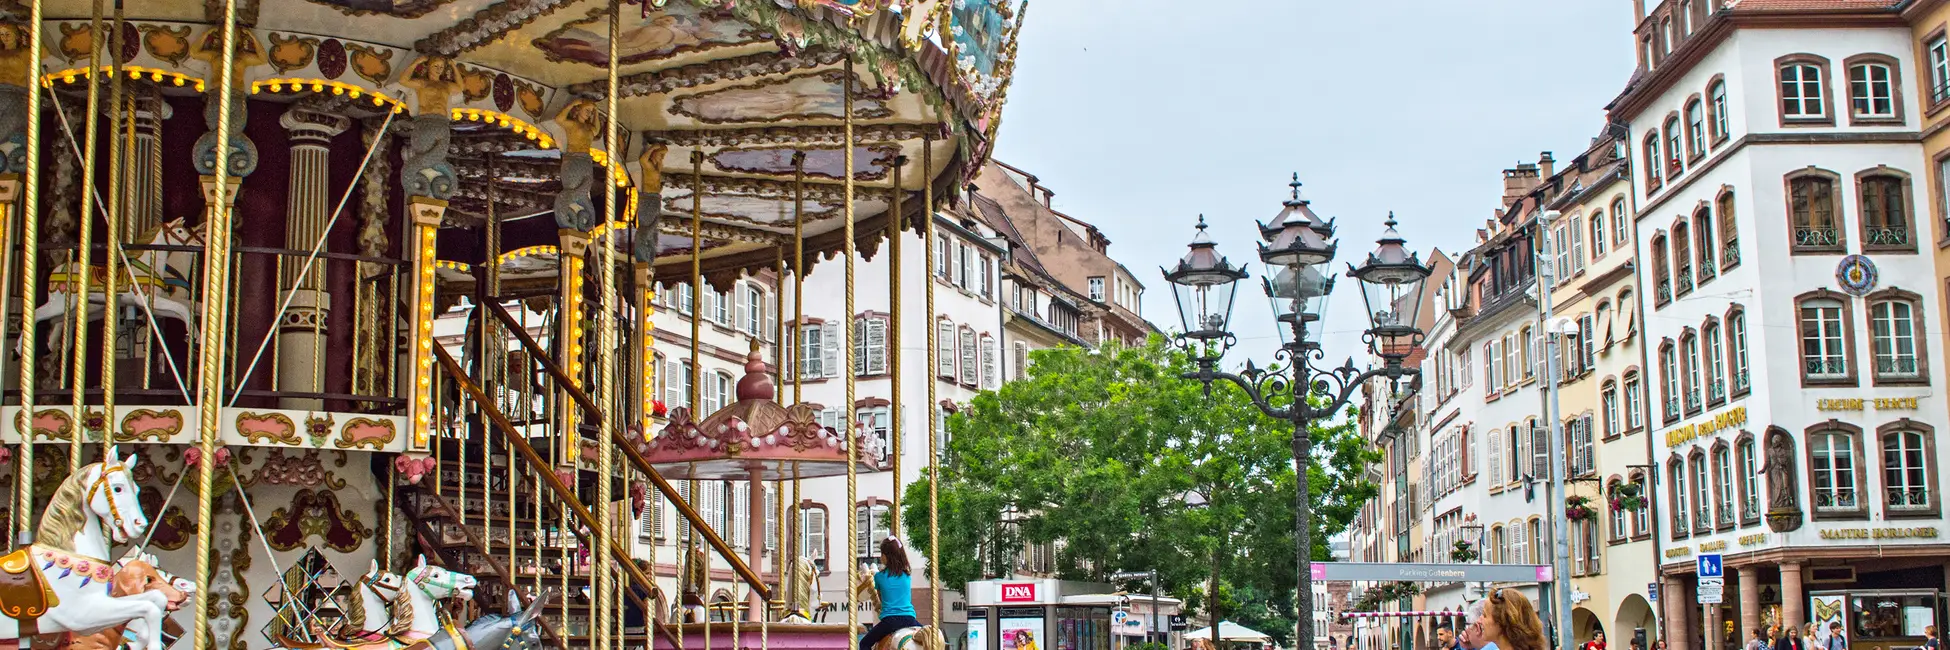 Carrousel sur la place Gutenberg à Strasbourg   